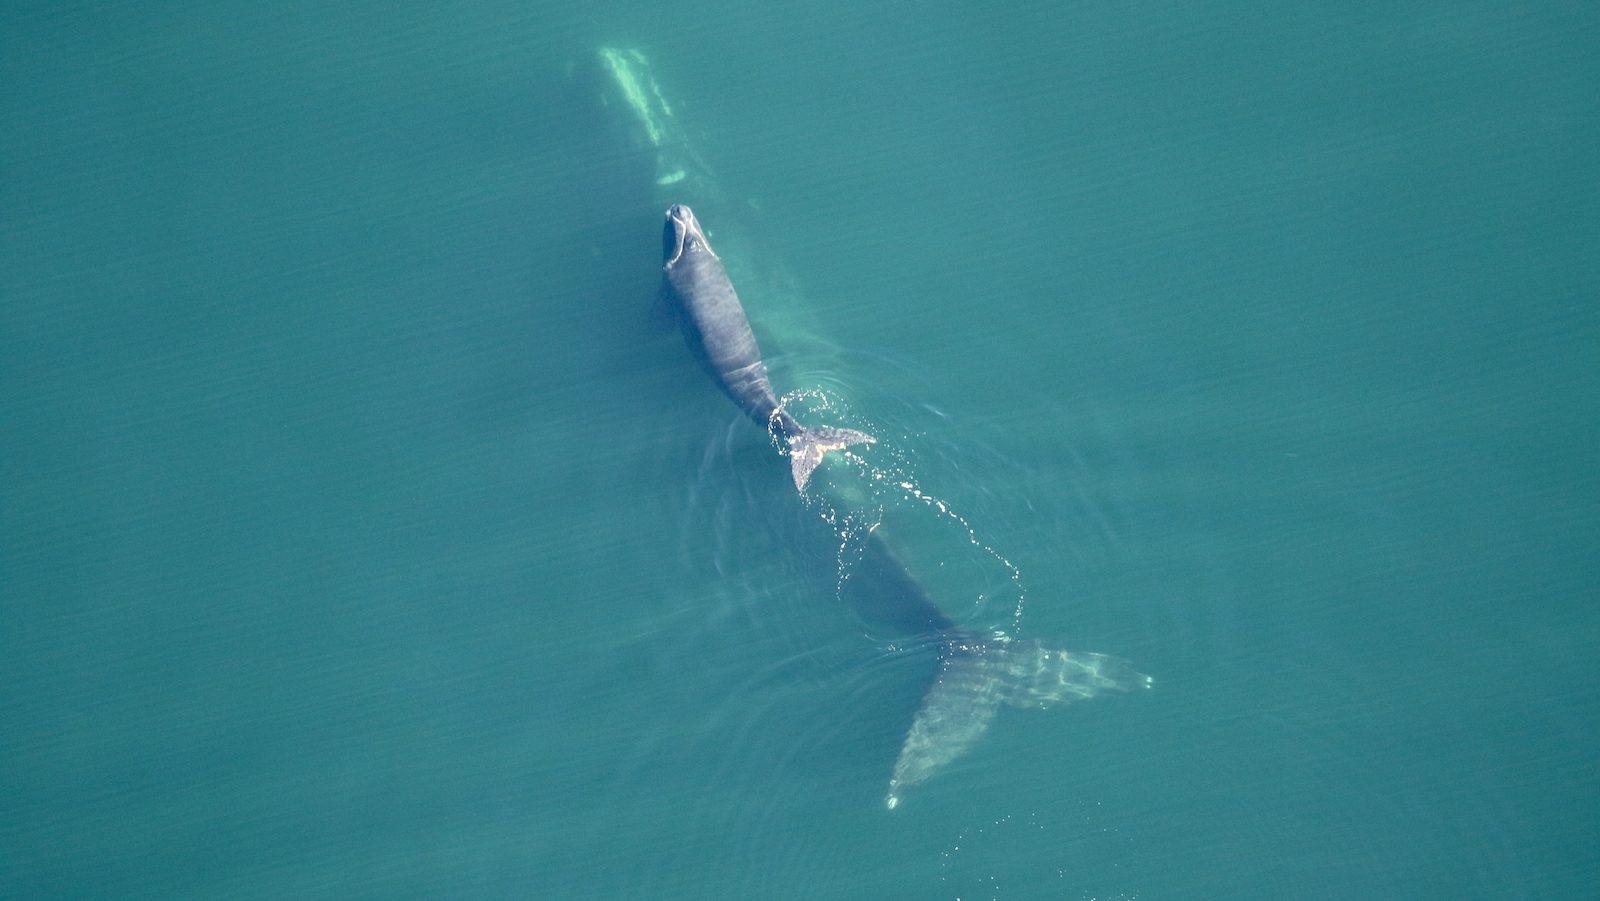 Des limitations de vitesse plus strictes pourraient sauver les baleines noires